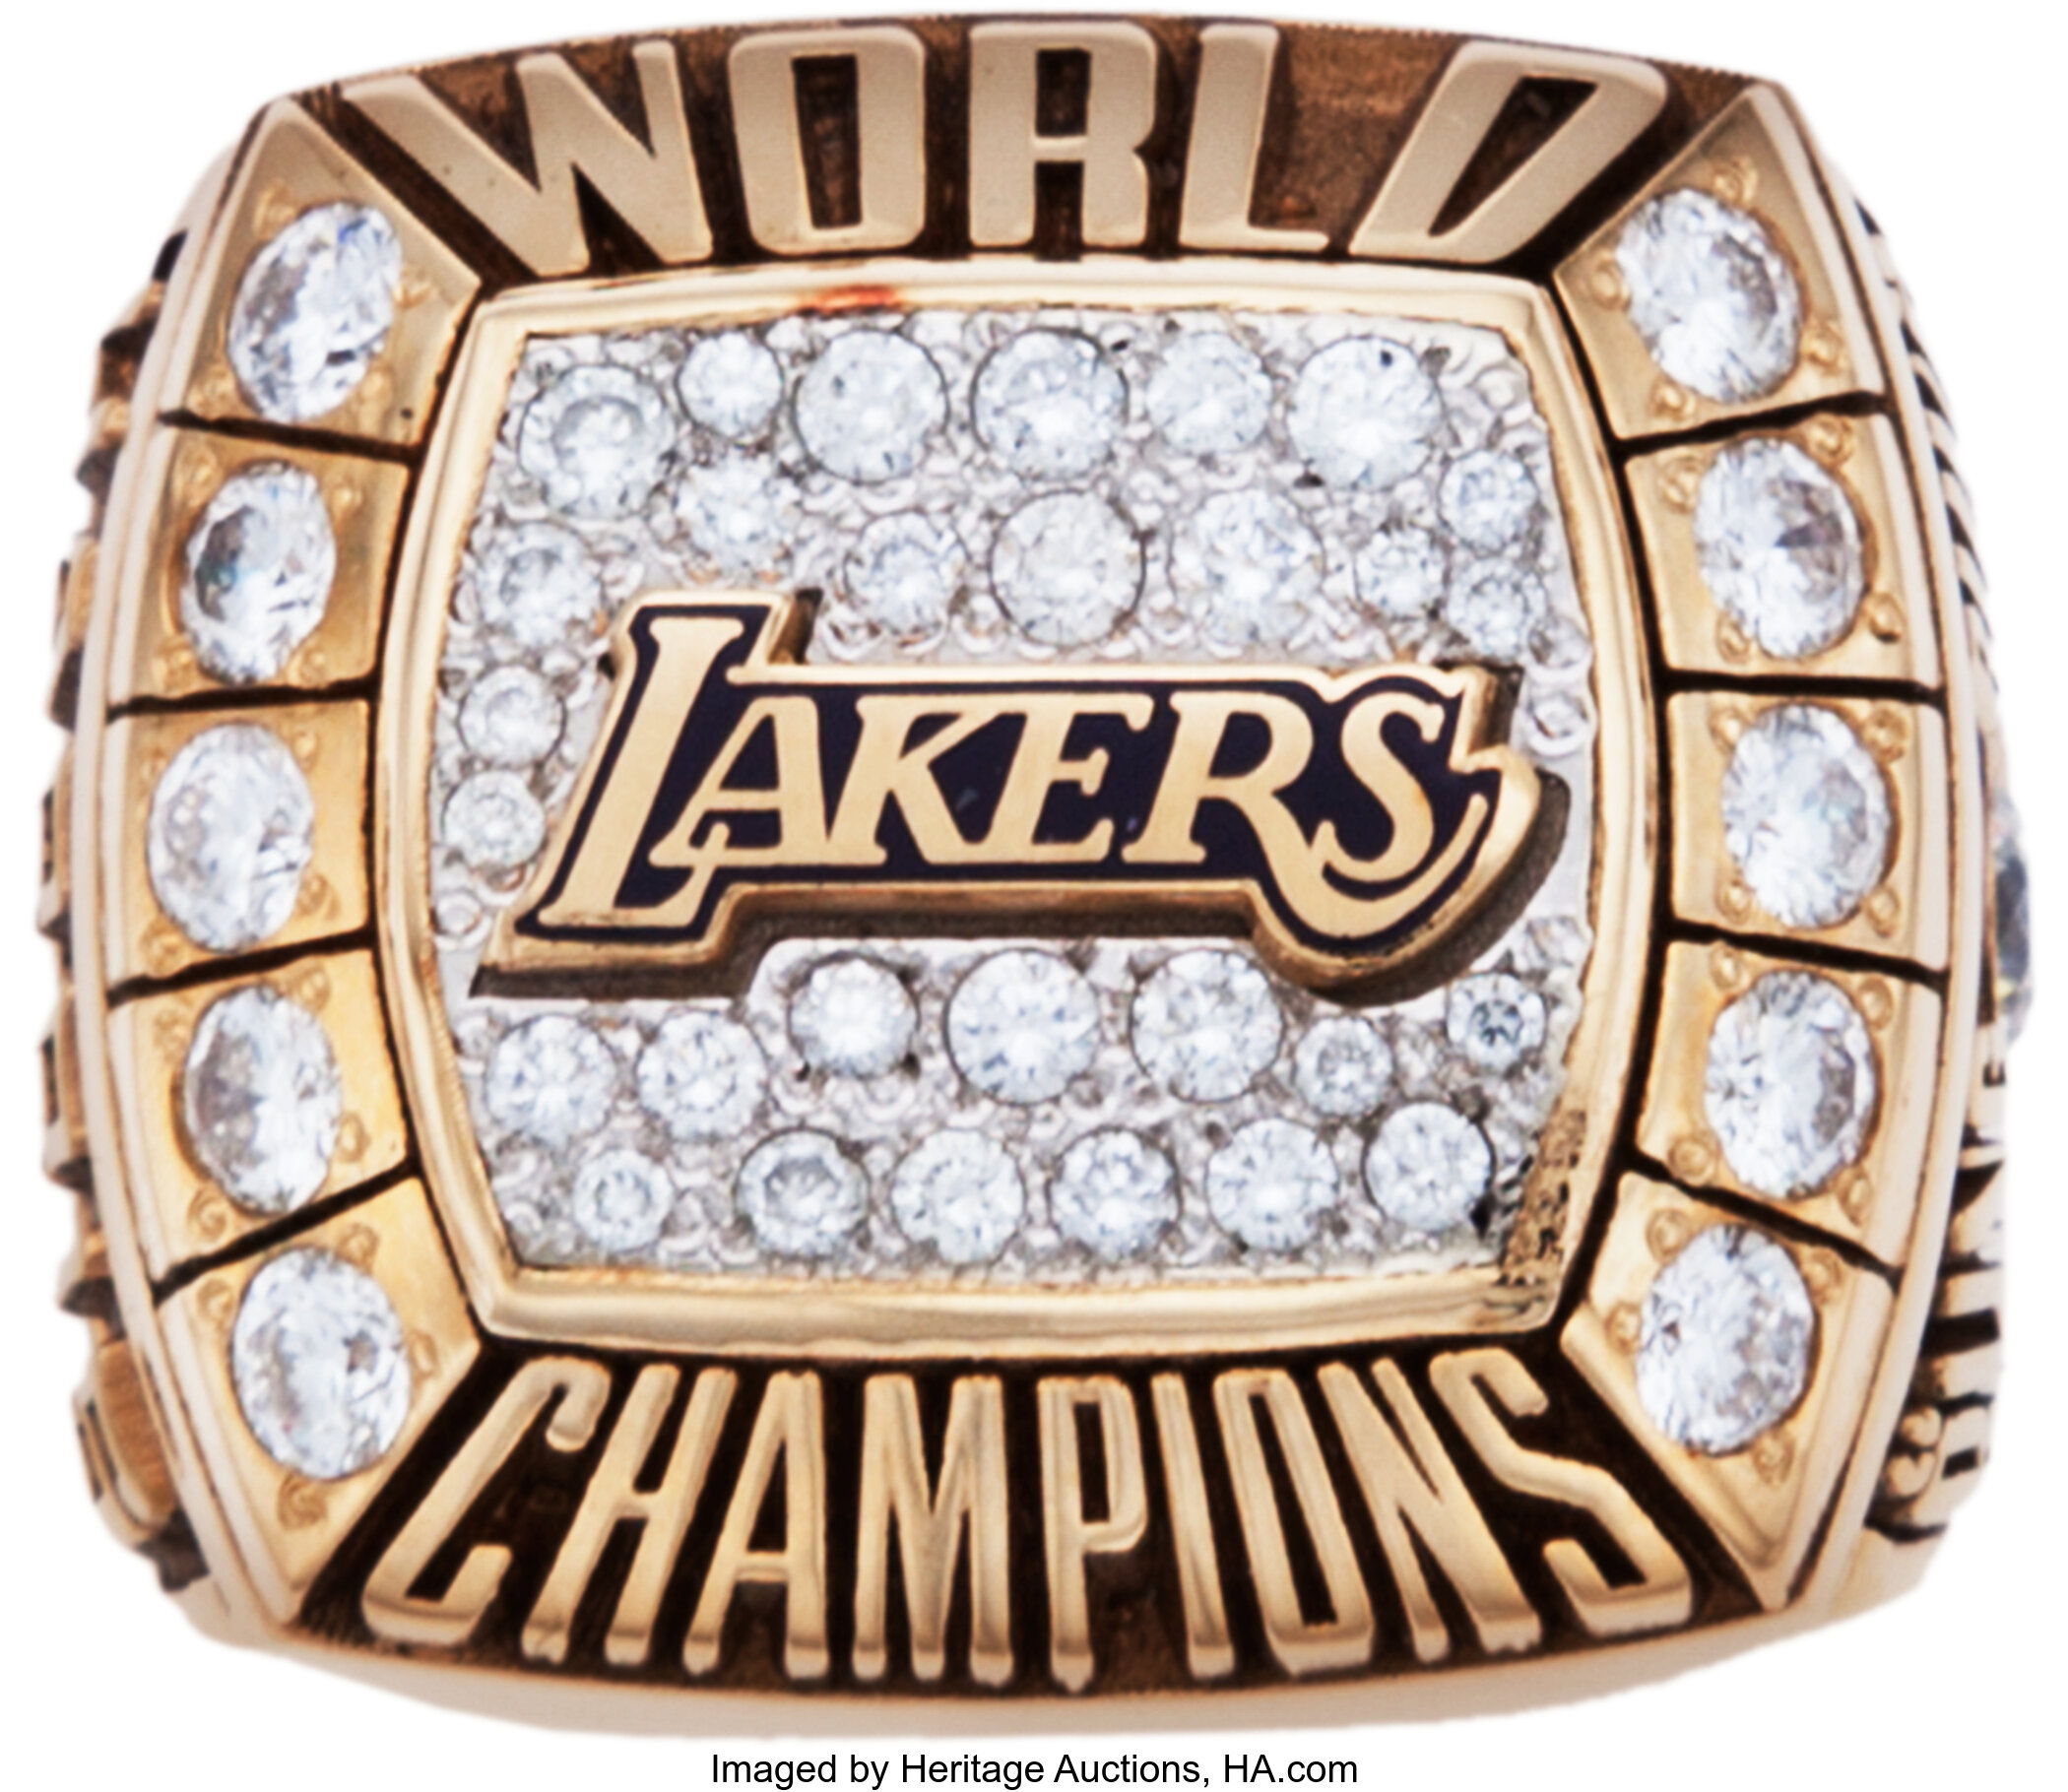 Los Angeles Lakers 2000 NBA Championship Ring